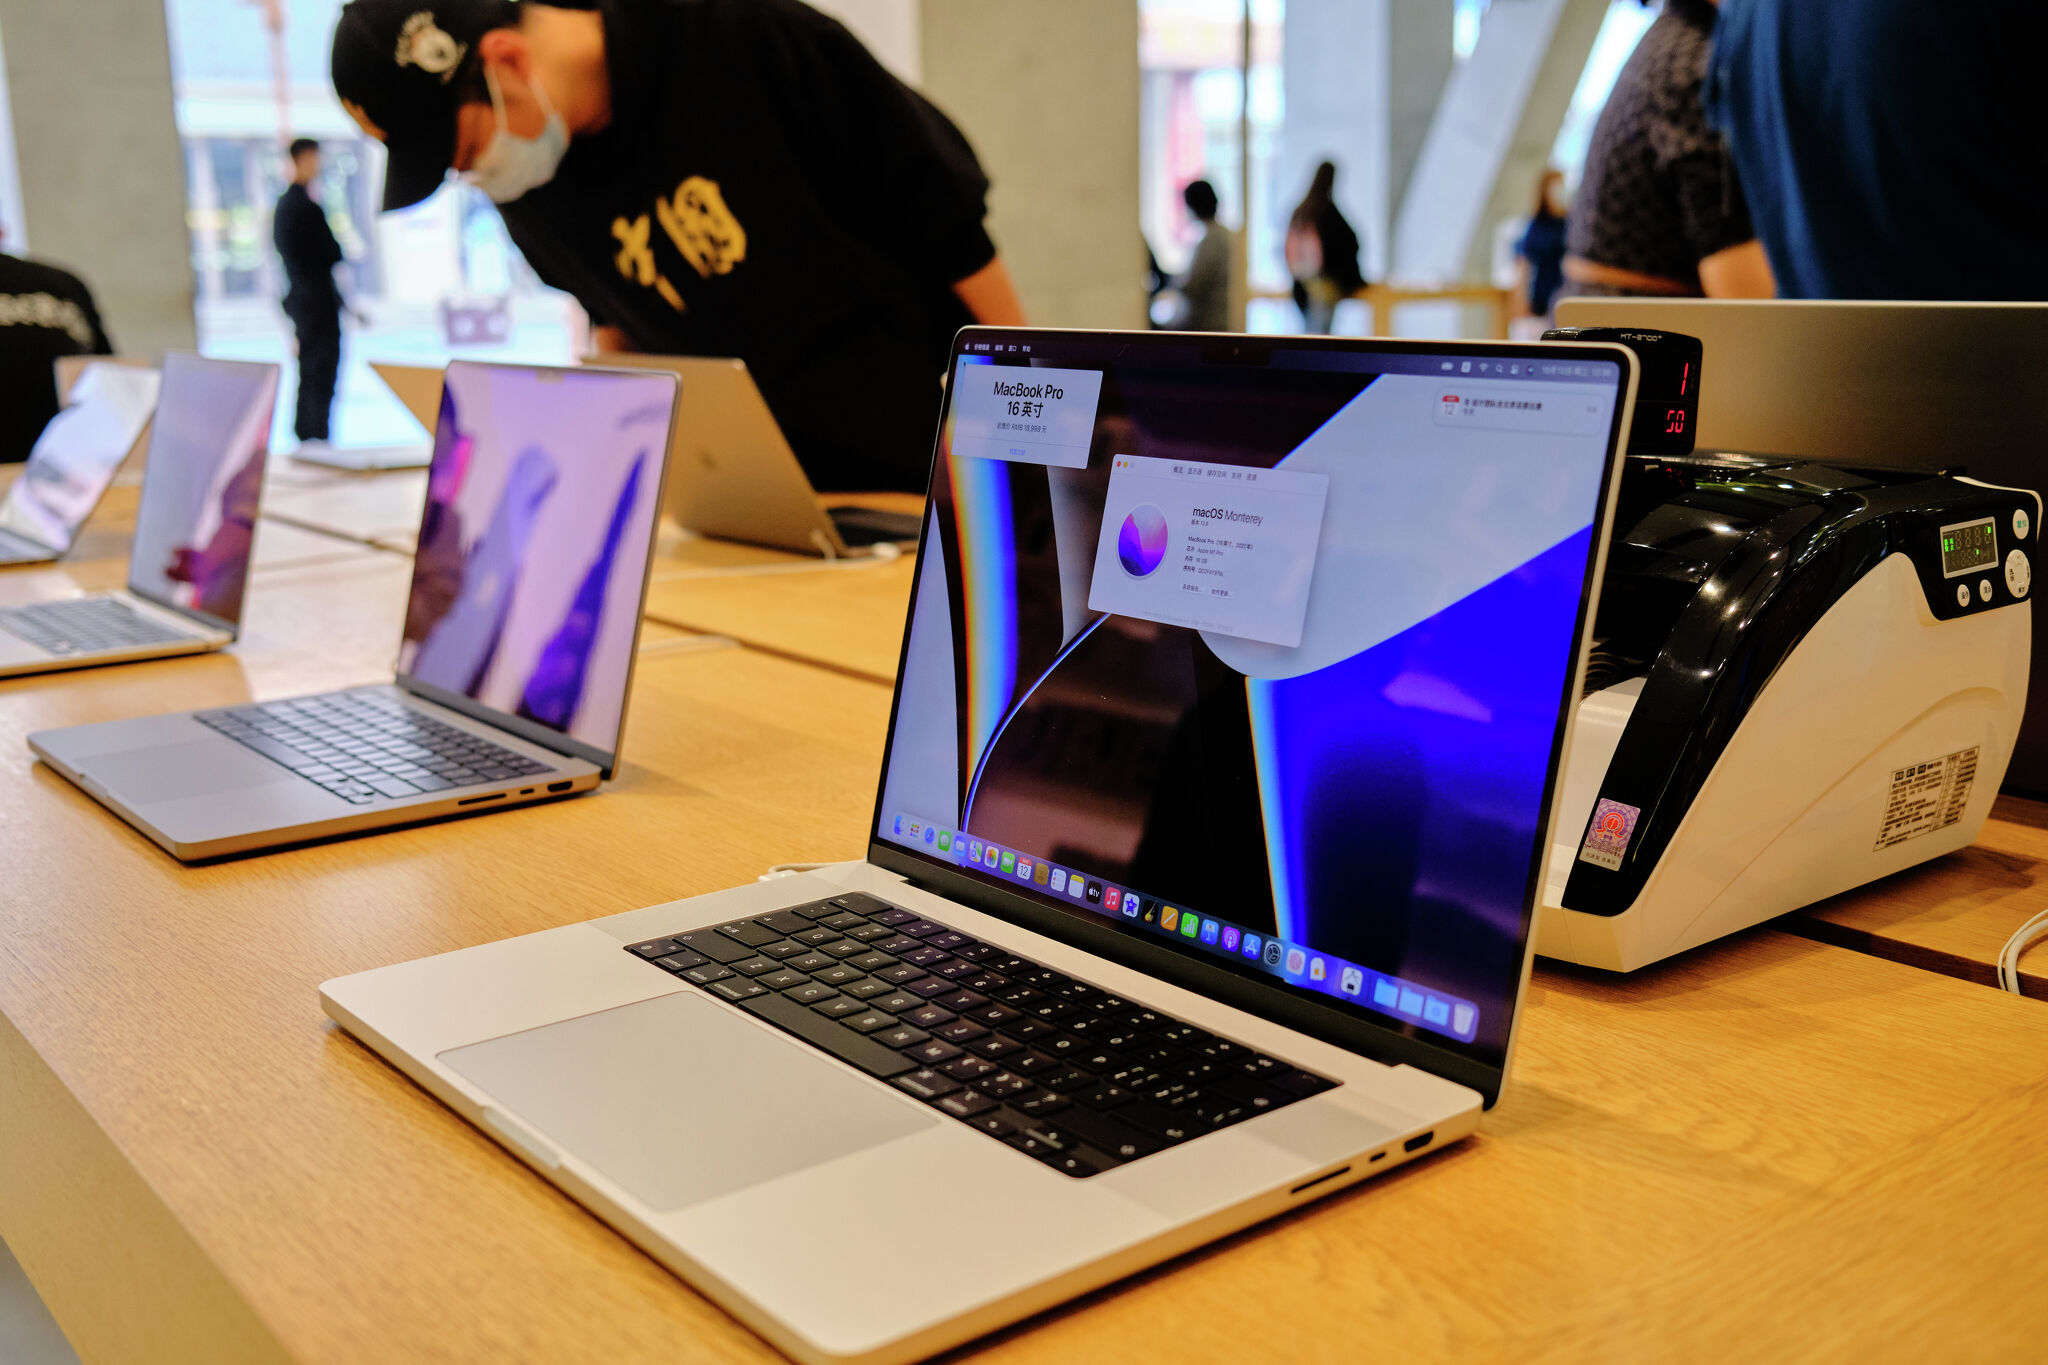 湾区科技工作者承认盗窃和售卖价值53.58万美元的MacBook